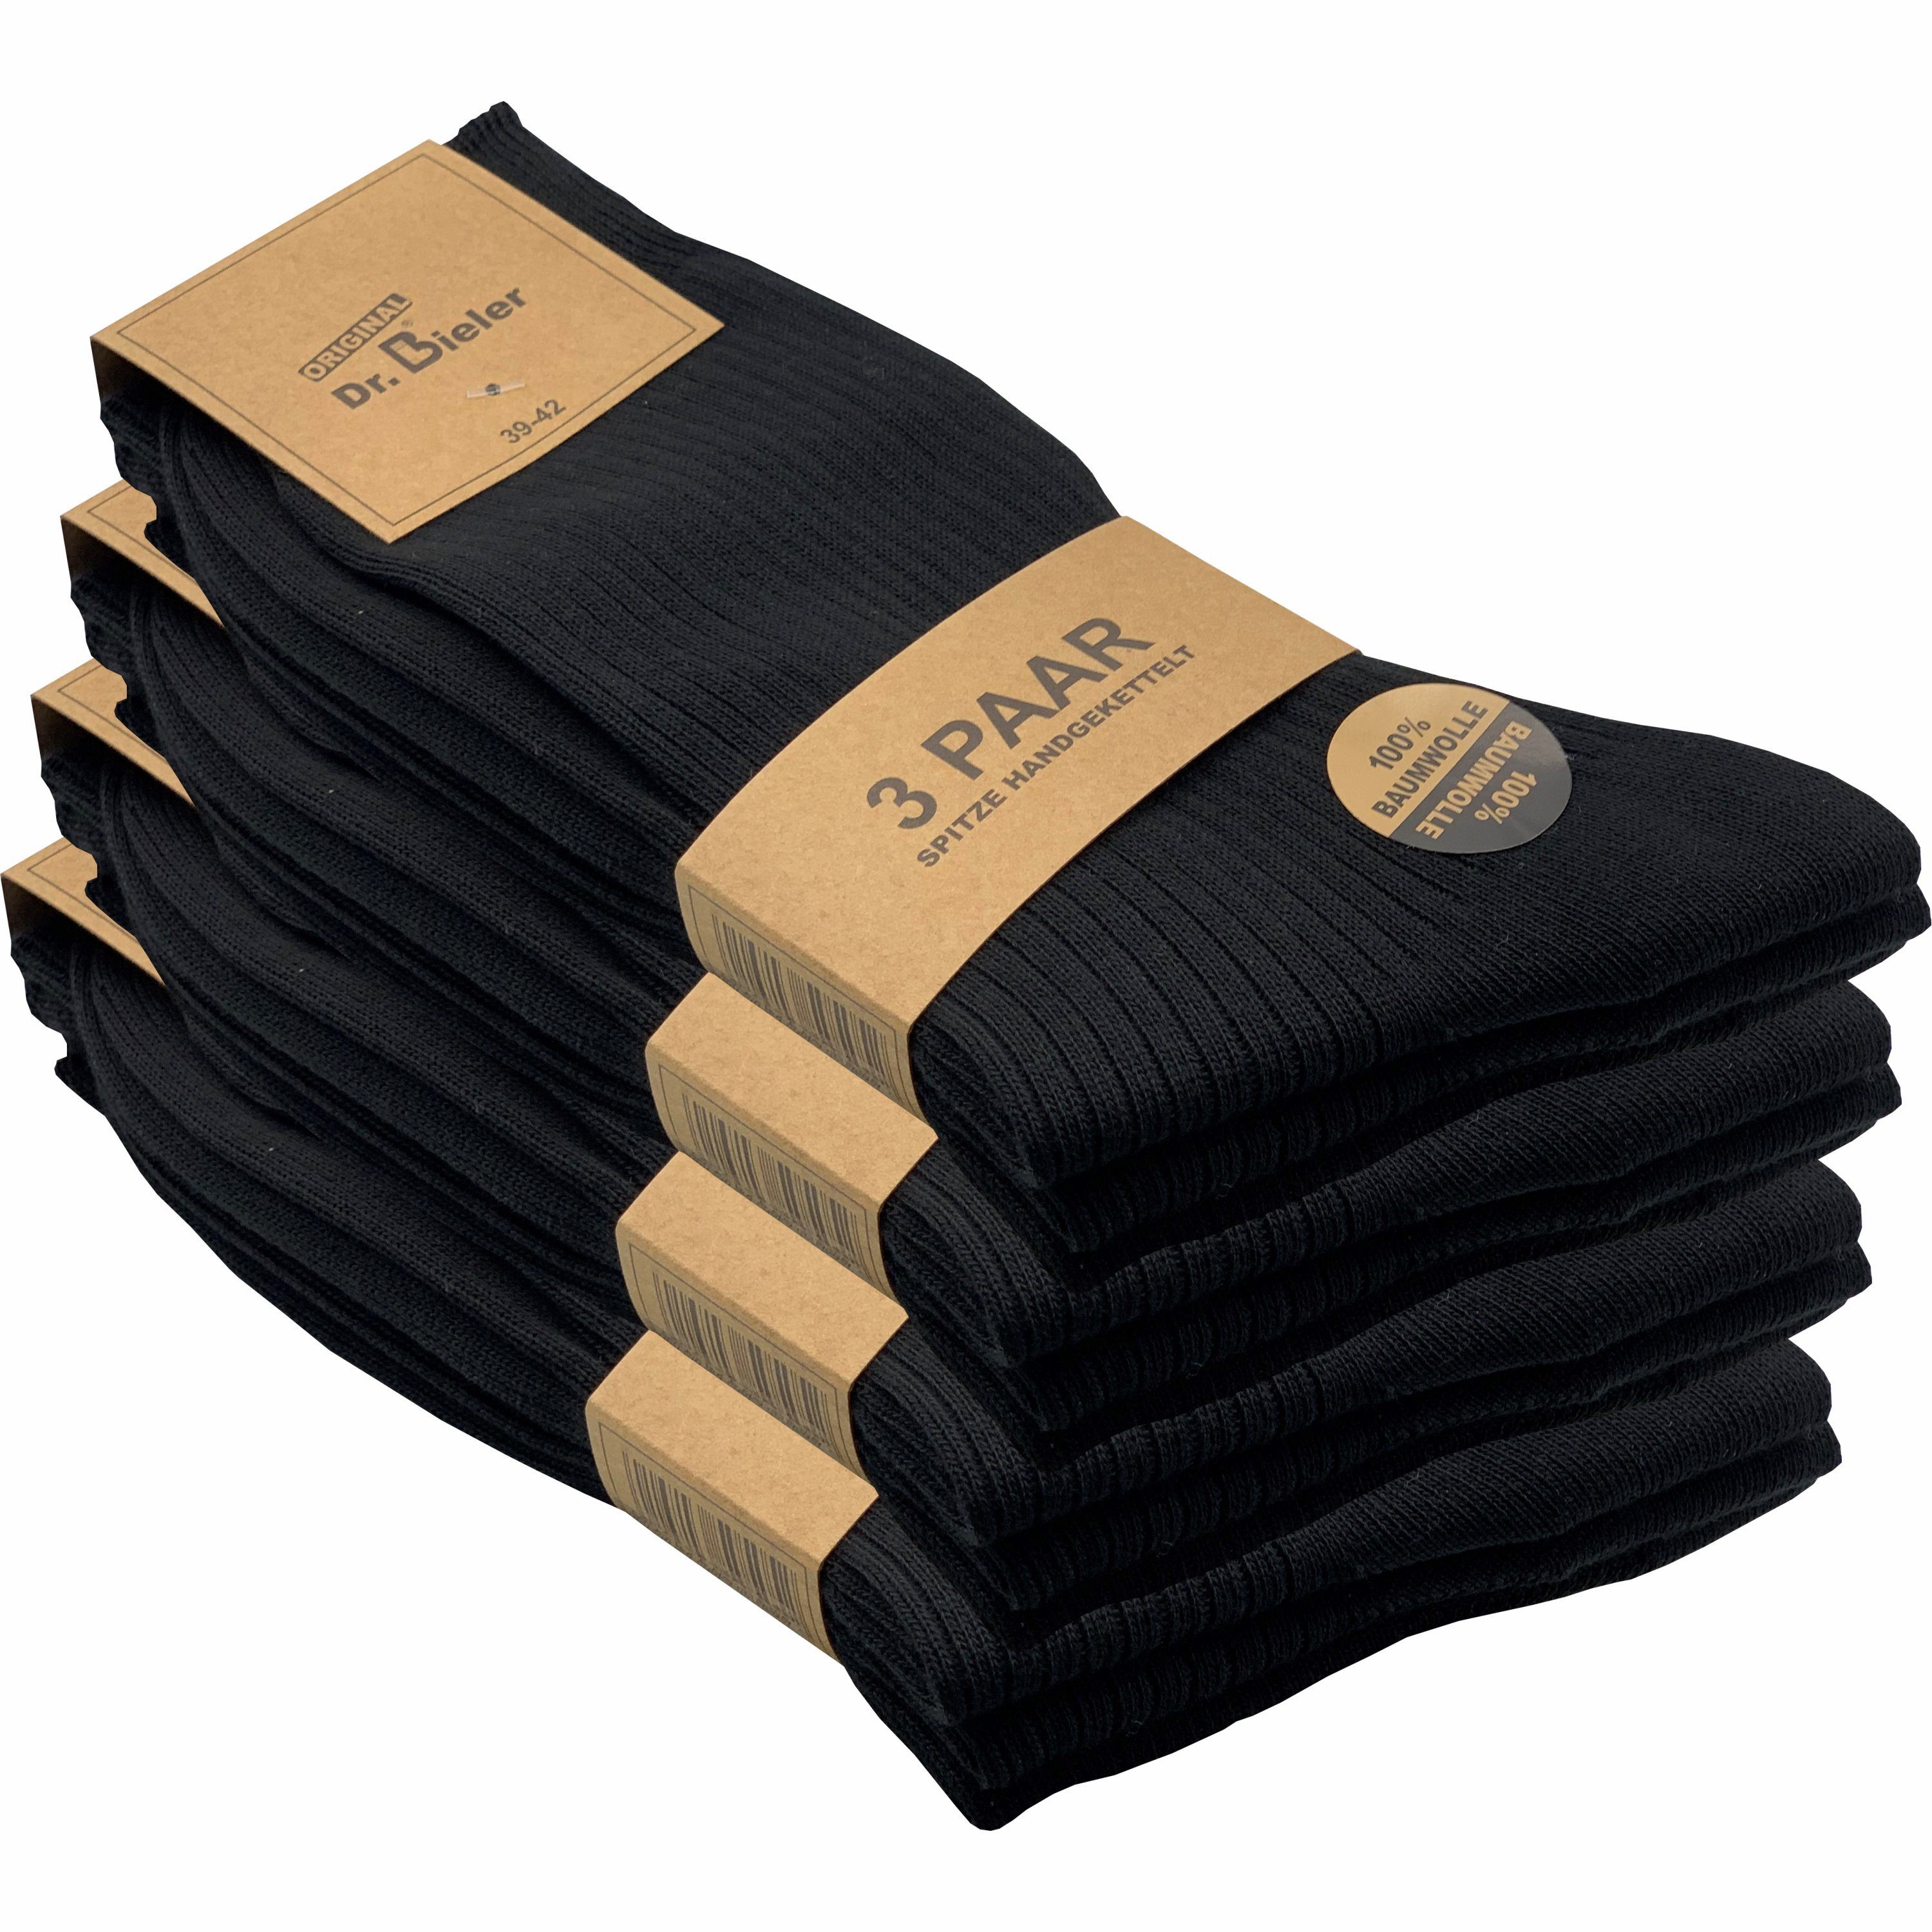 GAWILO Basicsocken für Herren in in & Gummi drückende schwarz Preisbewusste (12 für aus Paar) - ohne Baumwolle Qualität 100% Naht Rippe - mit ansprechender schwarz, weiß - blau ohne